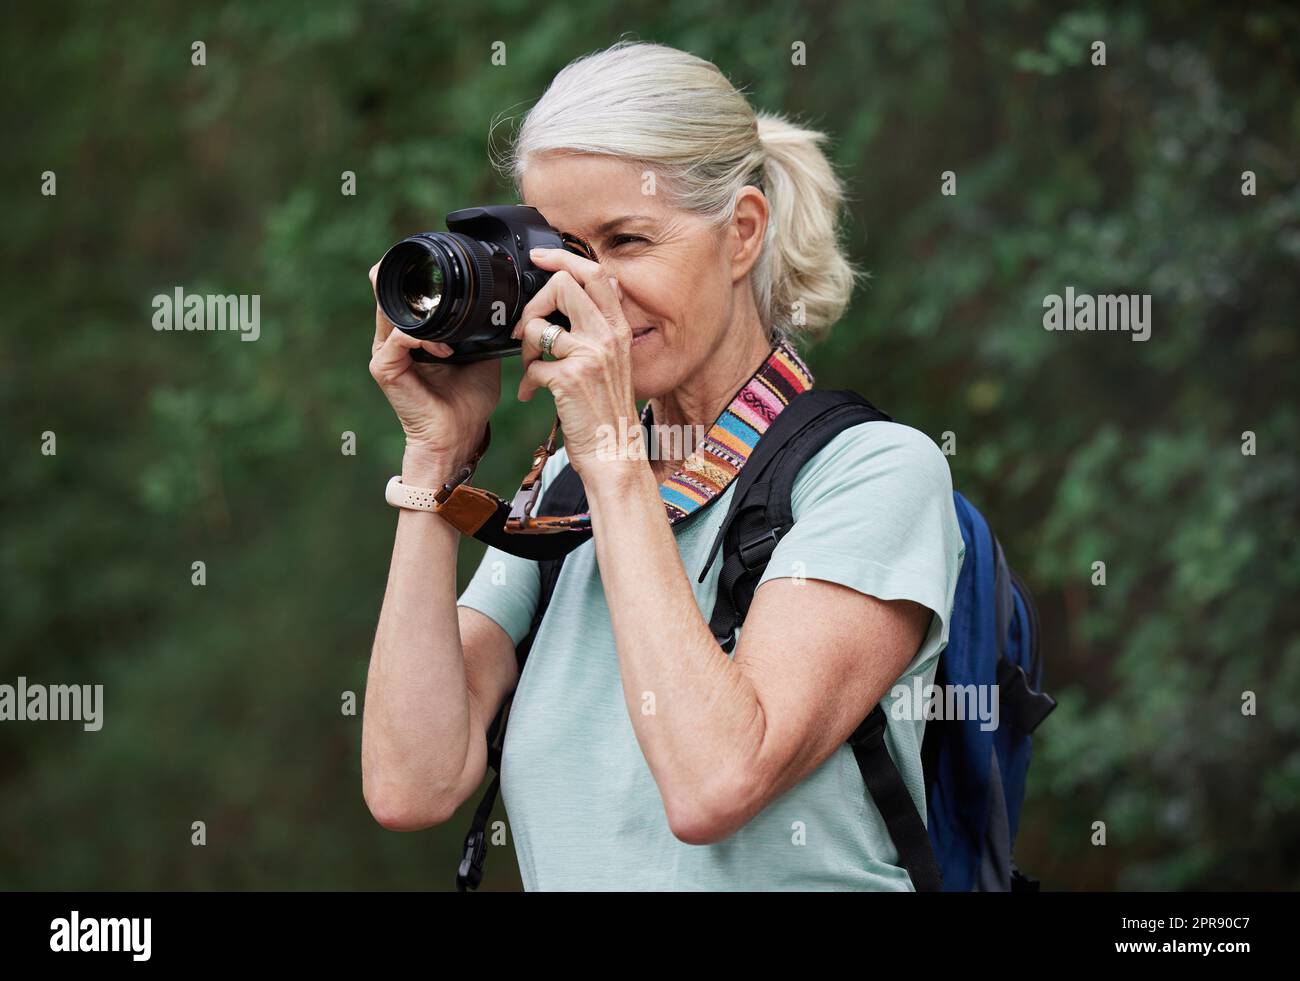 Eine reife weiße Frau, die beim Wandern Fotos mit der Kamera macht. Seniorin, die mit ihrer drahtlosen Digitalkamera Fotos in der Natur bei einer Wanderung im Freien macht Stockfoto